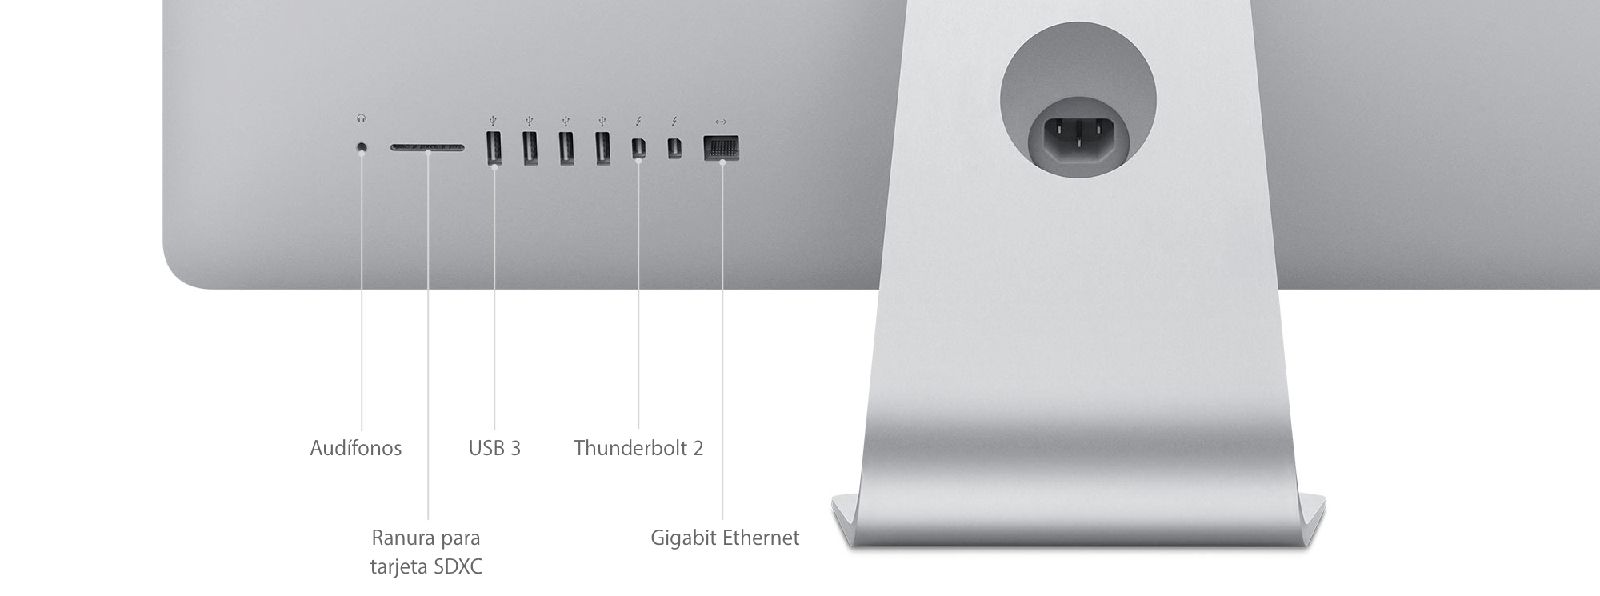 iMac (Retina 5K, 27 pulgadas, finales de 2015) - Especificaciones técnicas  (CO)